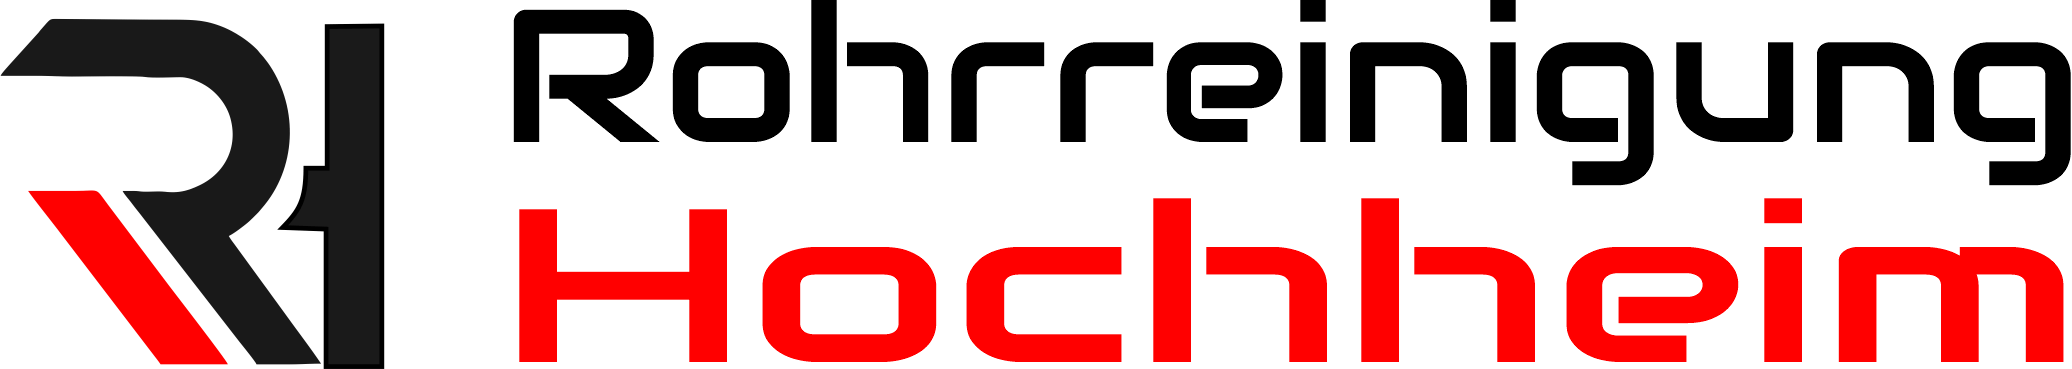 Rohrreinigung Hochheim Logo